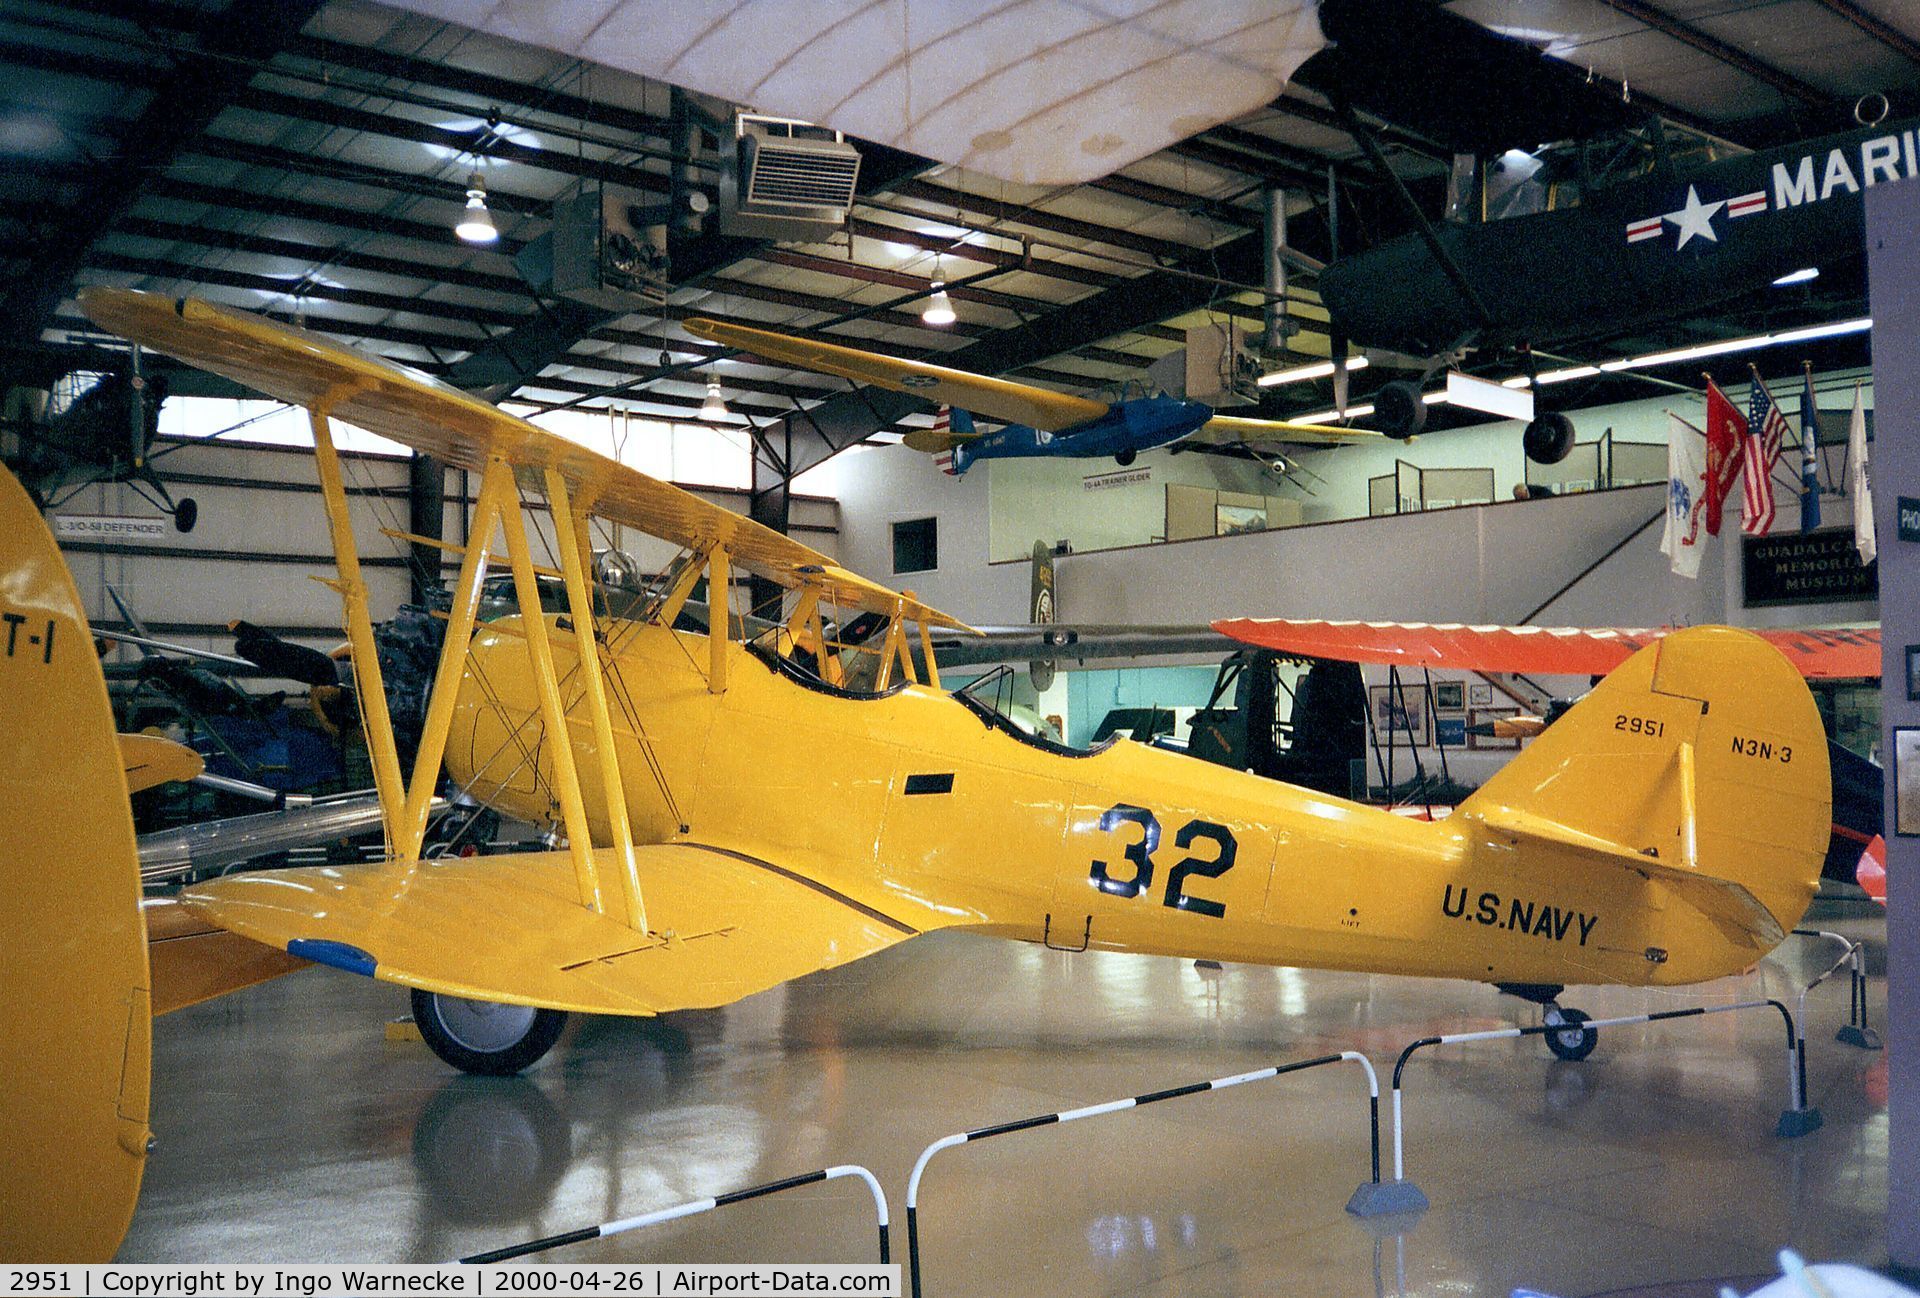 2951, Naval Aircraft Factory N3N-3 C/N Not found 2951, Naval Aircraft Factory N3N-3 'Yellow Peril' at the Air Zoo, Kalamazoo MI